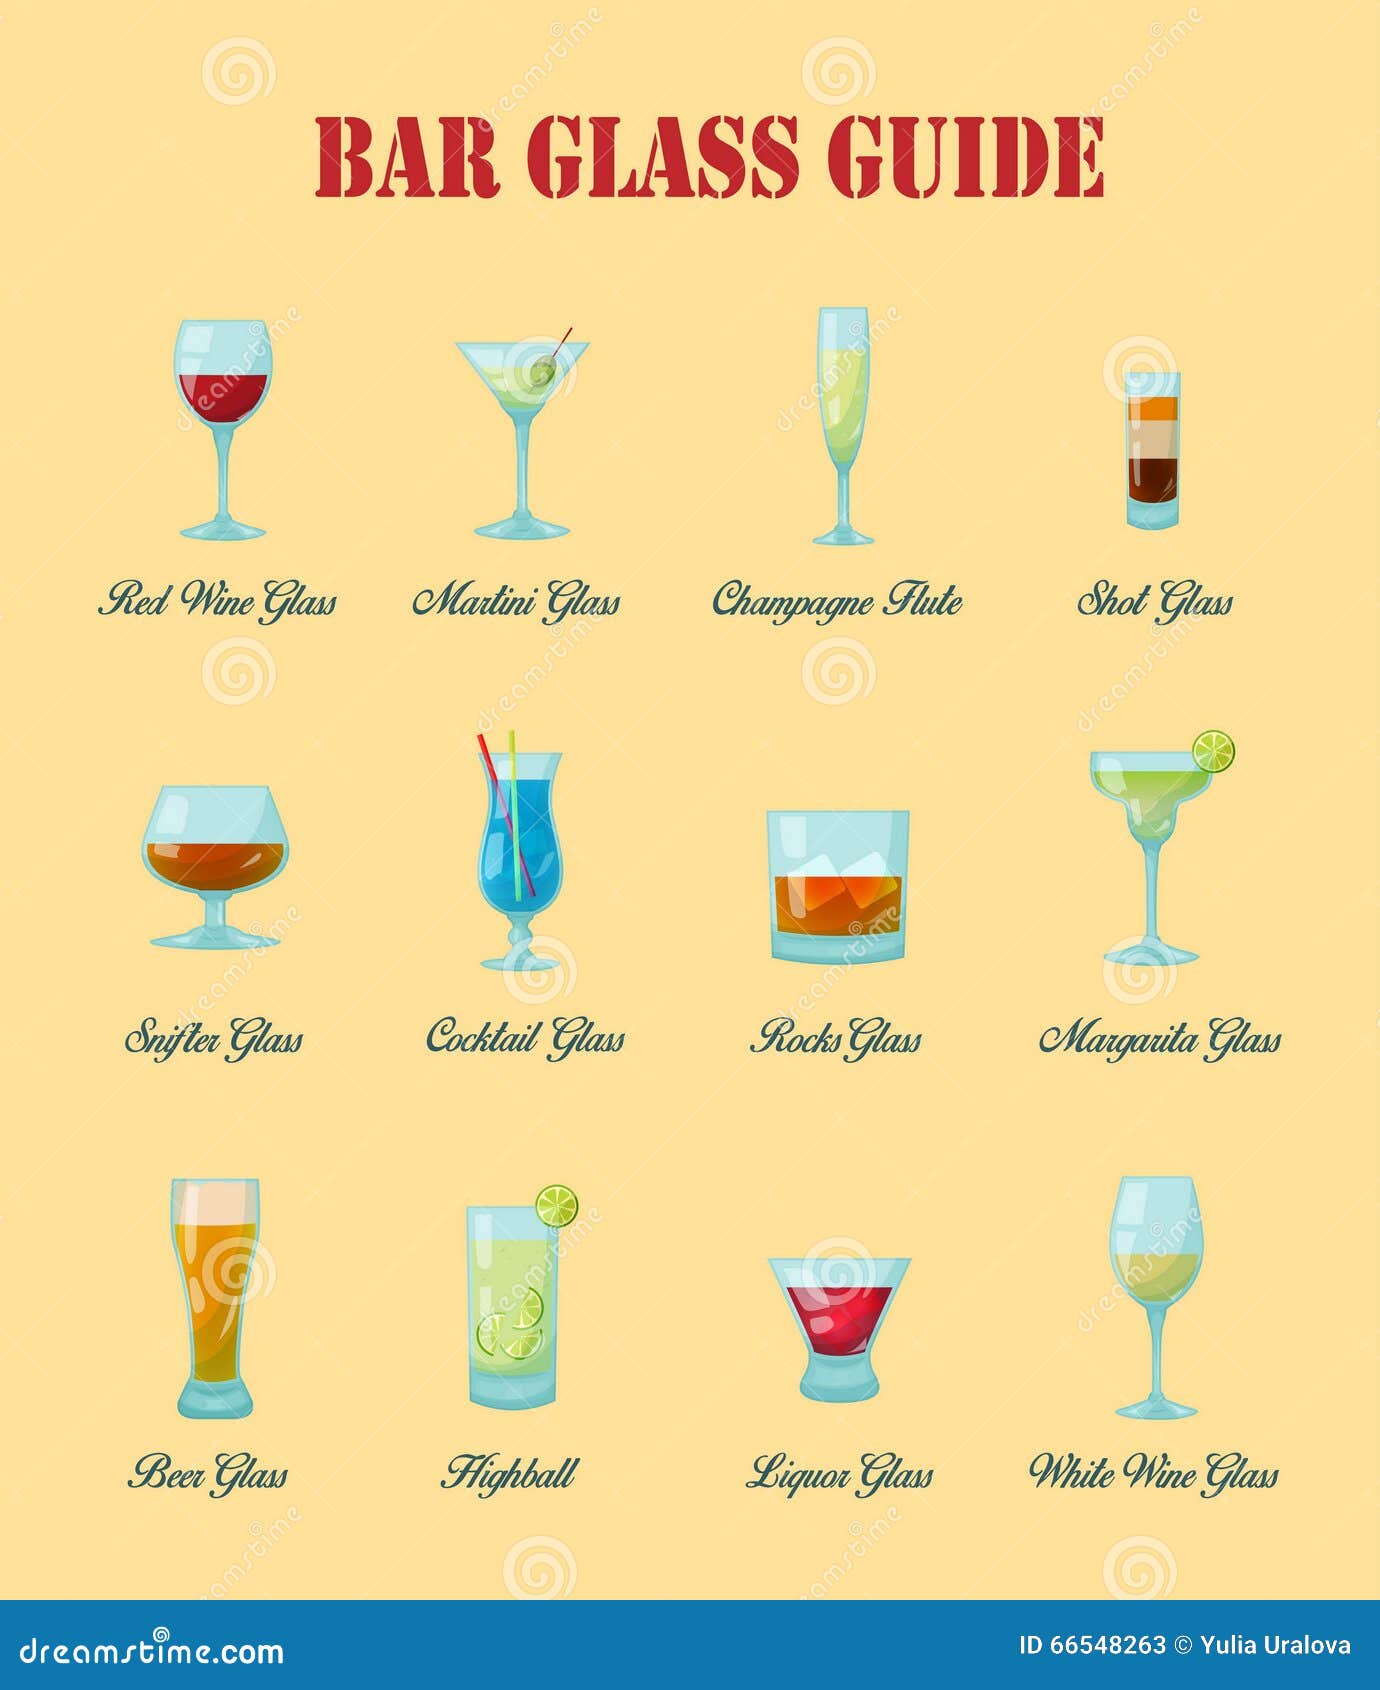 les types de verres à cocktail et comment les utiliser